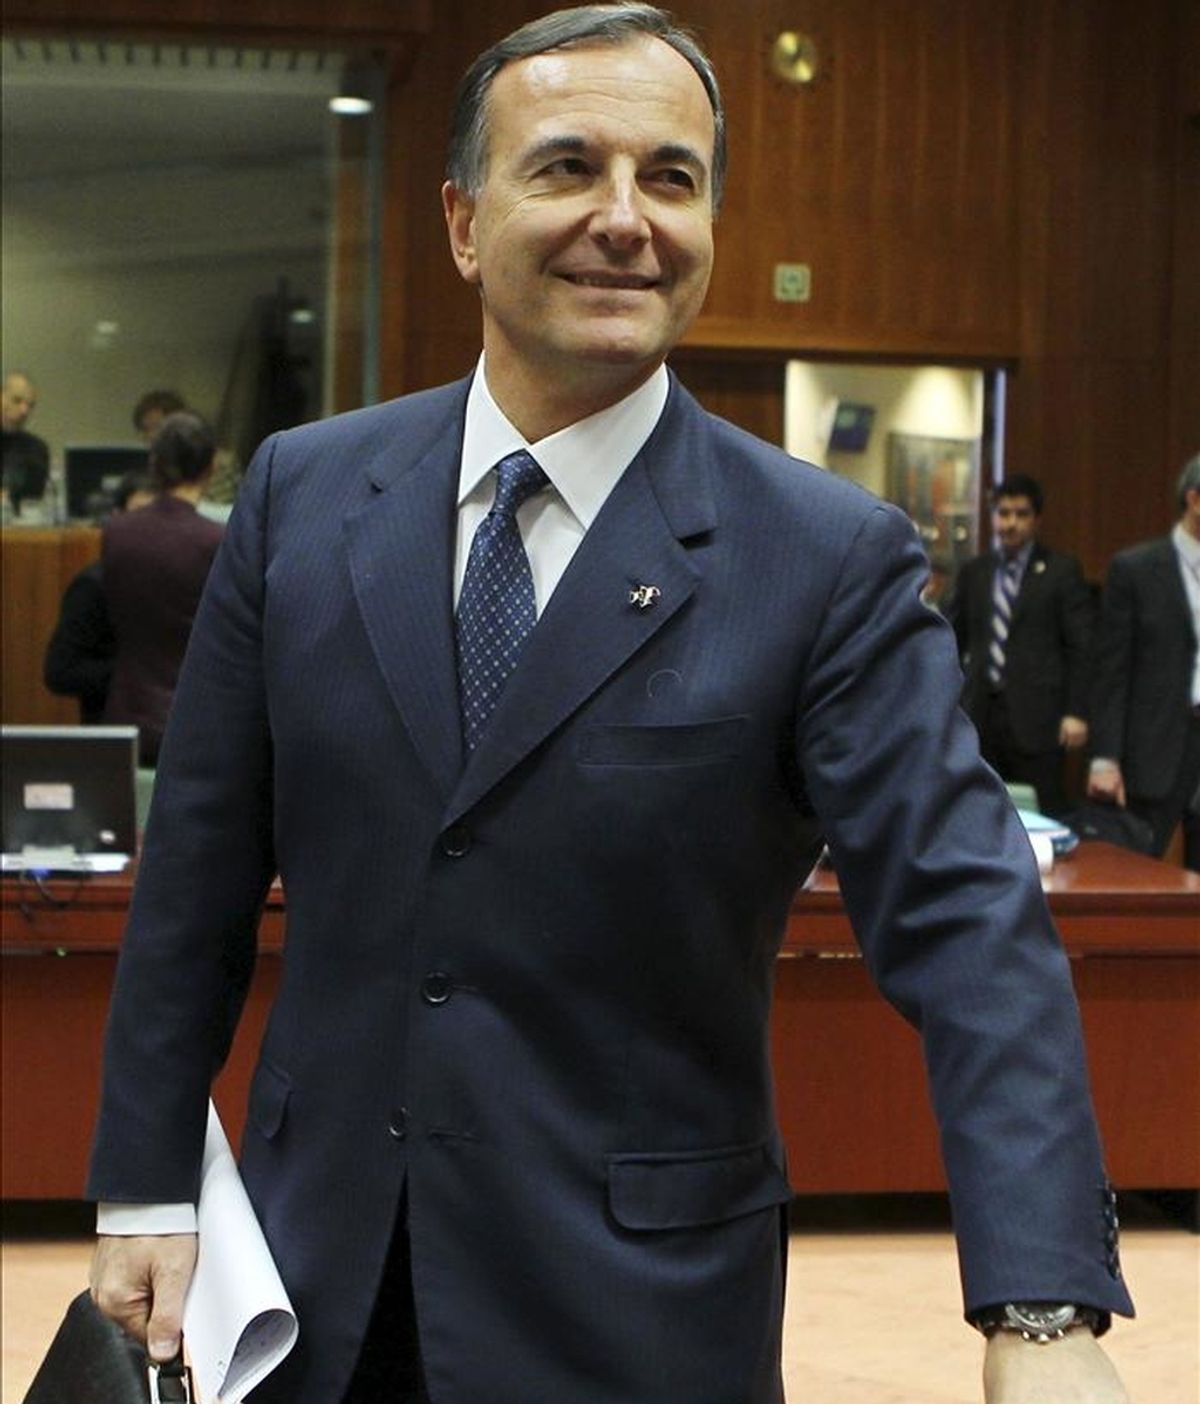 El ministro italiano de Asuntos Exteriores, Franco Frattini, al comenzo de la reunión de ministros de Exteriores de la Unión Europea celebrada hoy, lunes, 21 de febrero de 2011, en la sede del Consejo Europeo en Bruselas (Bélgica). EFE